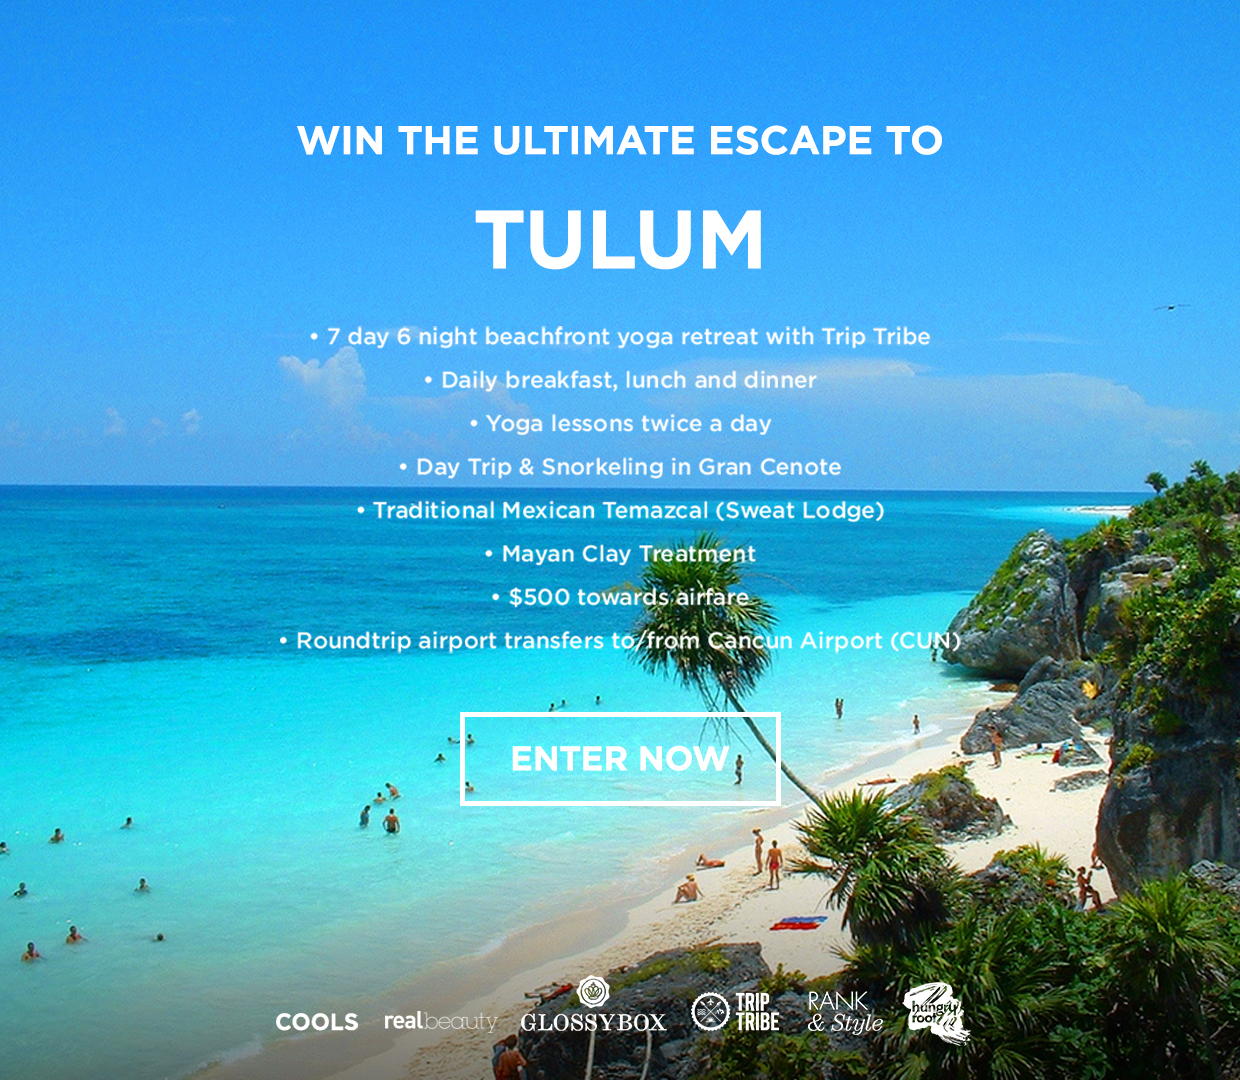 Win the Ultimate Tulum Escape!